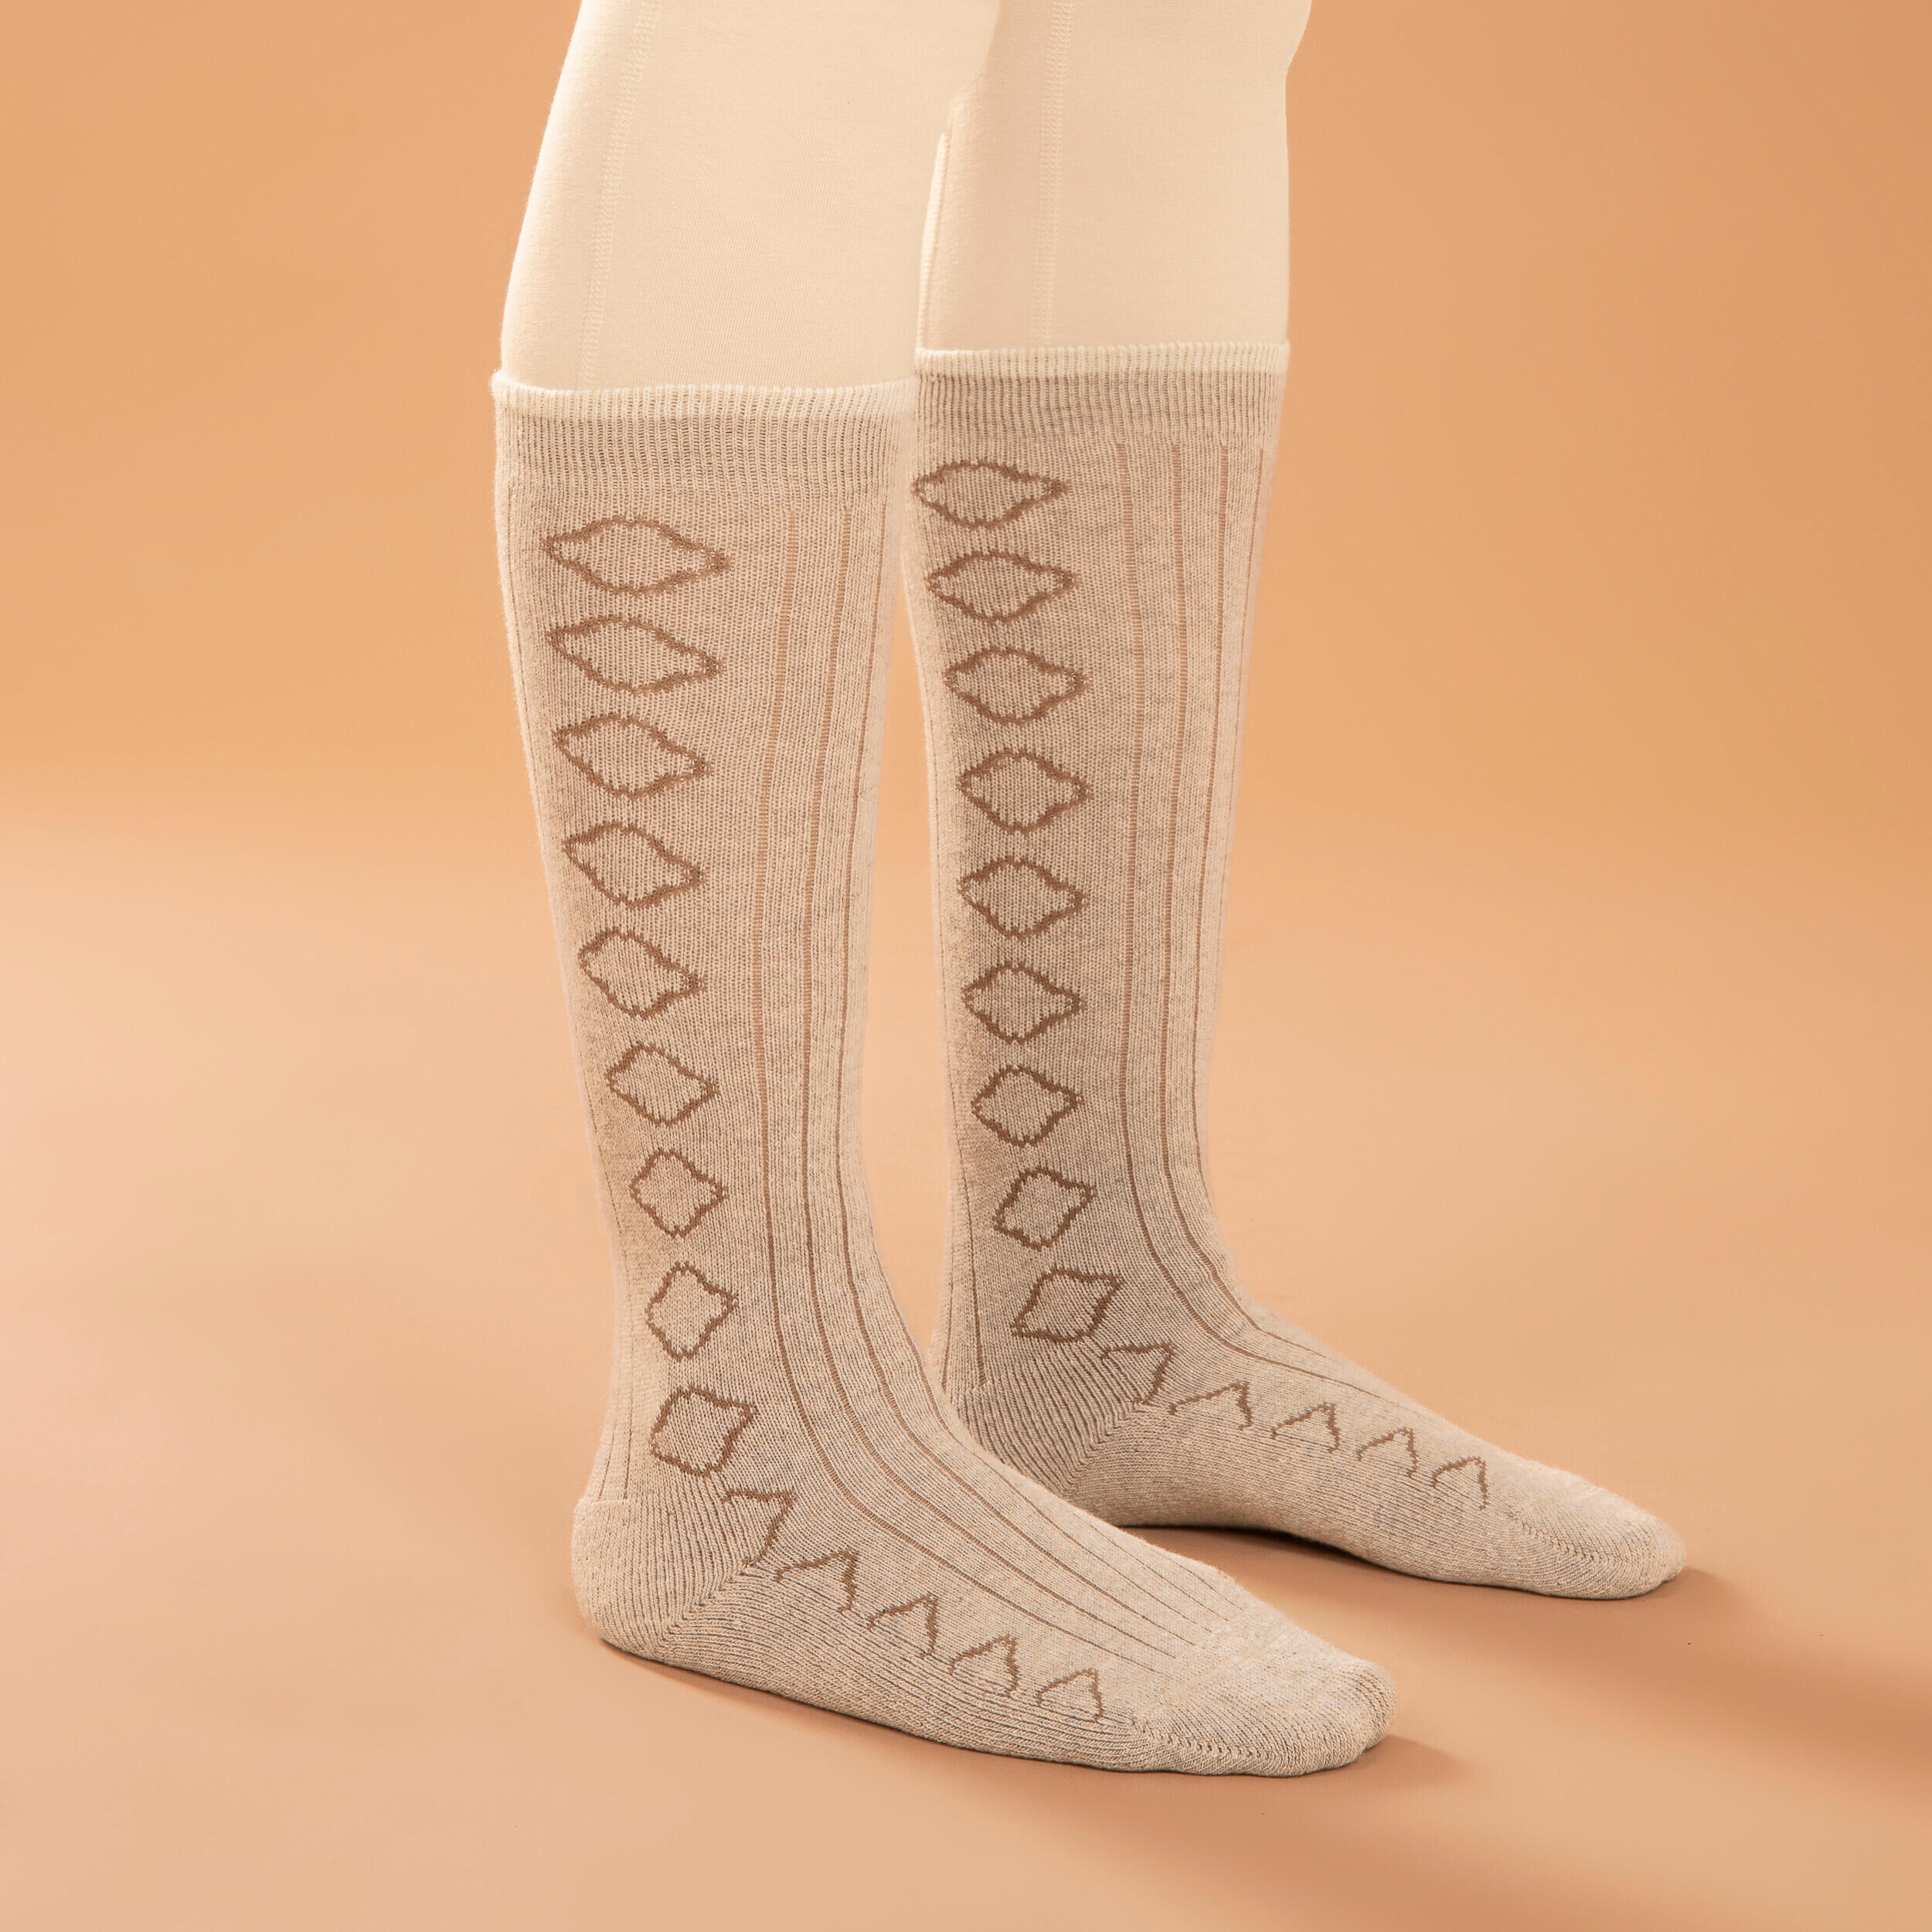 KIMJALY Merino Wool Meditation Socks - Beige